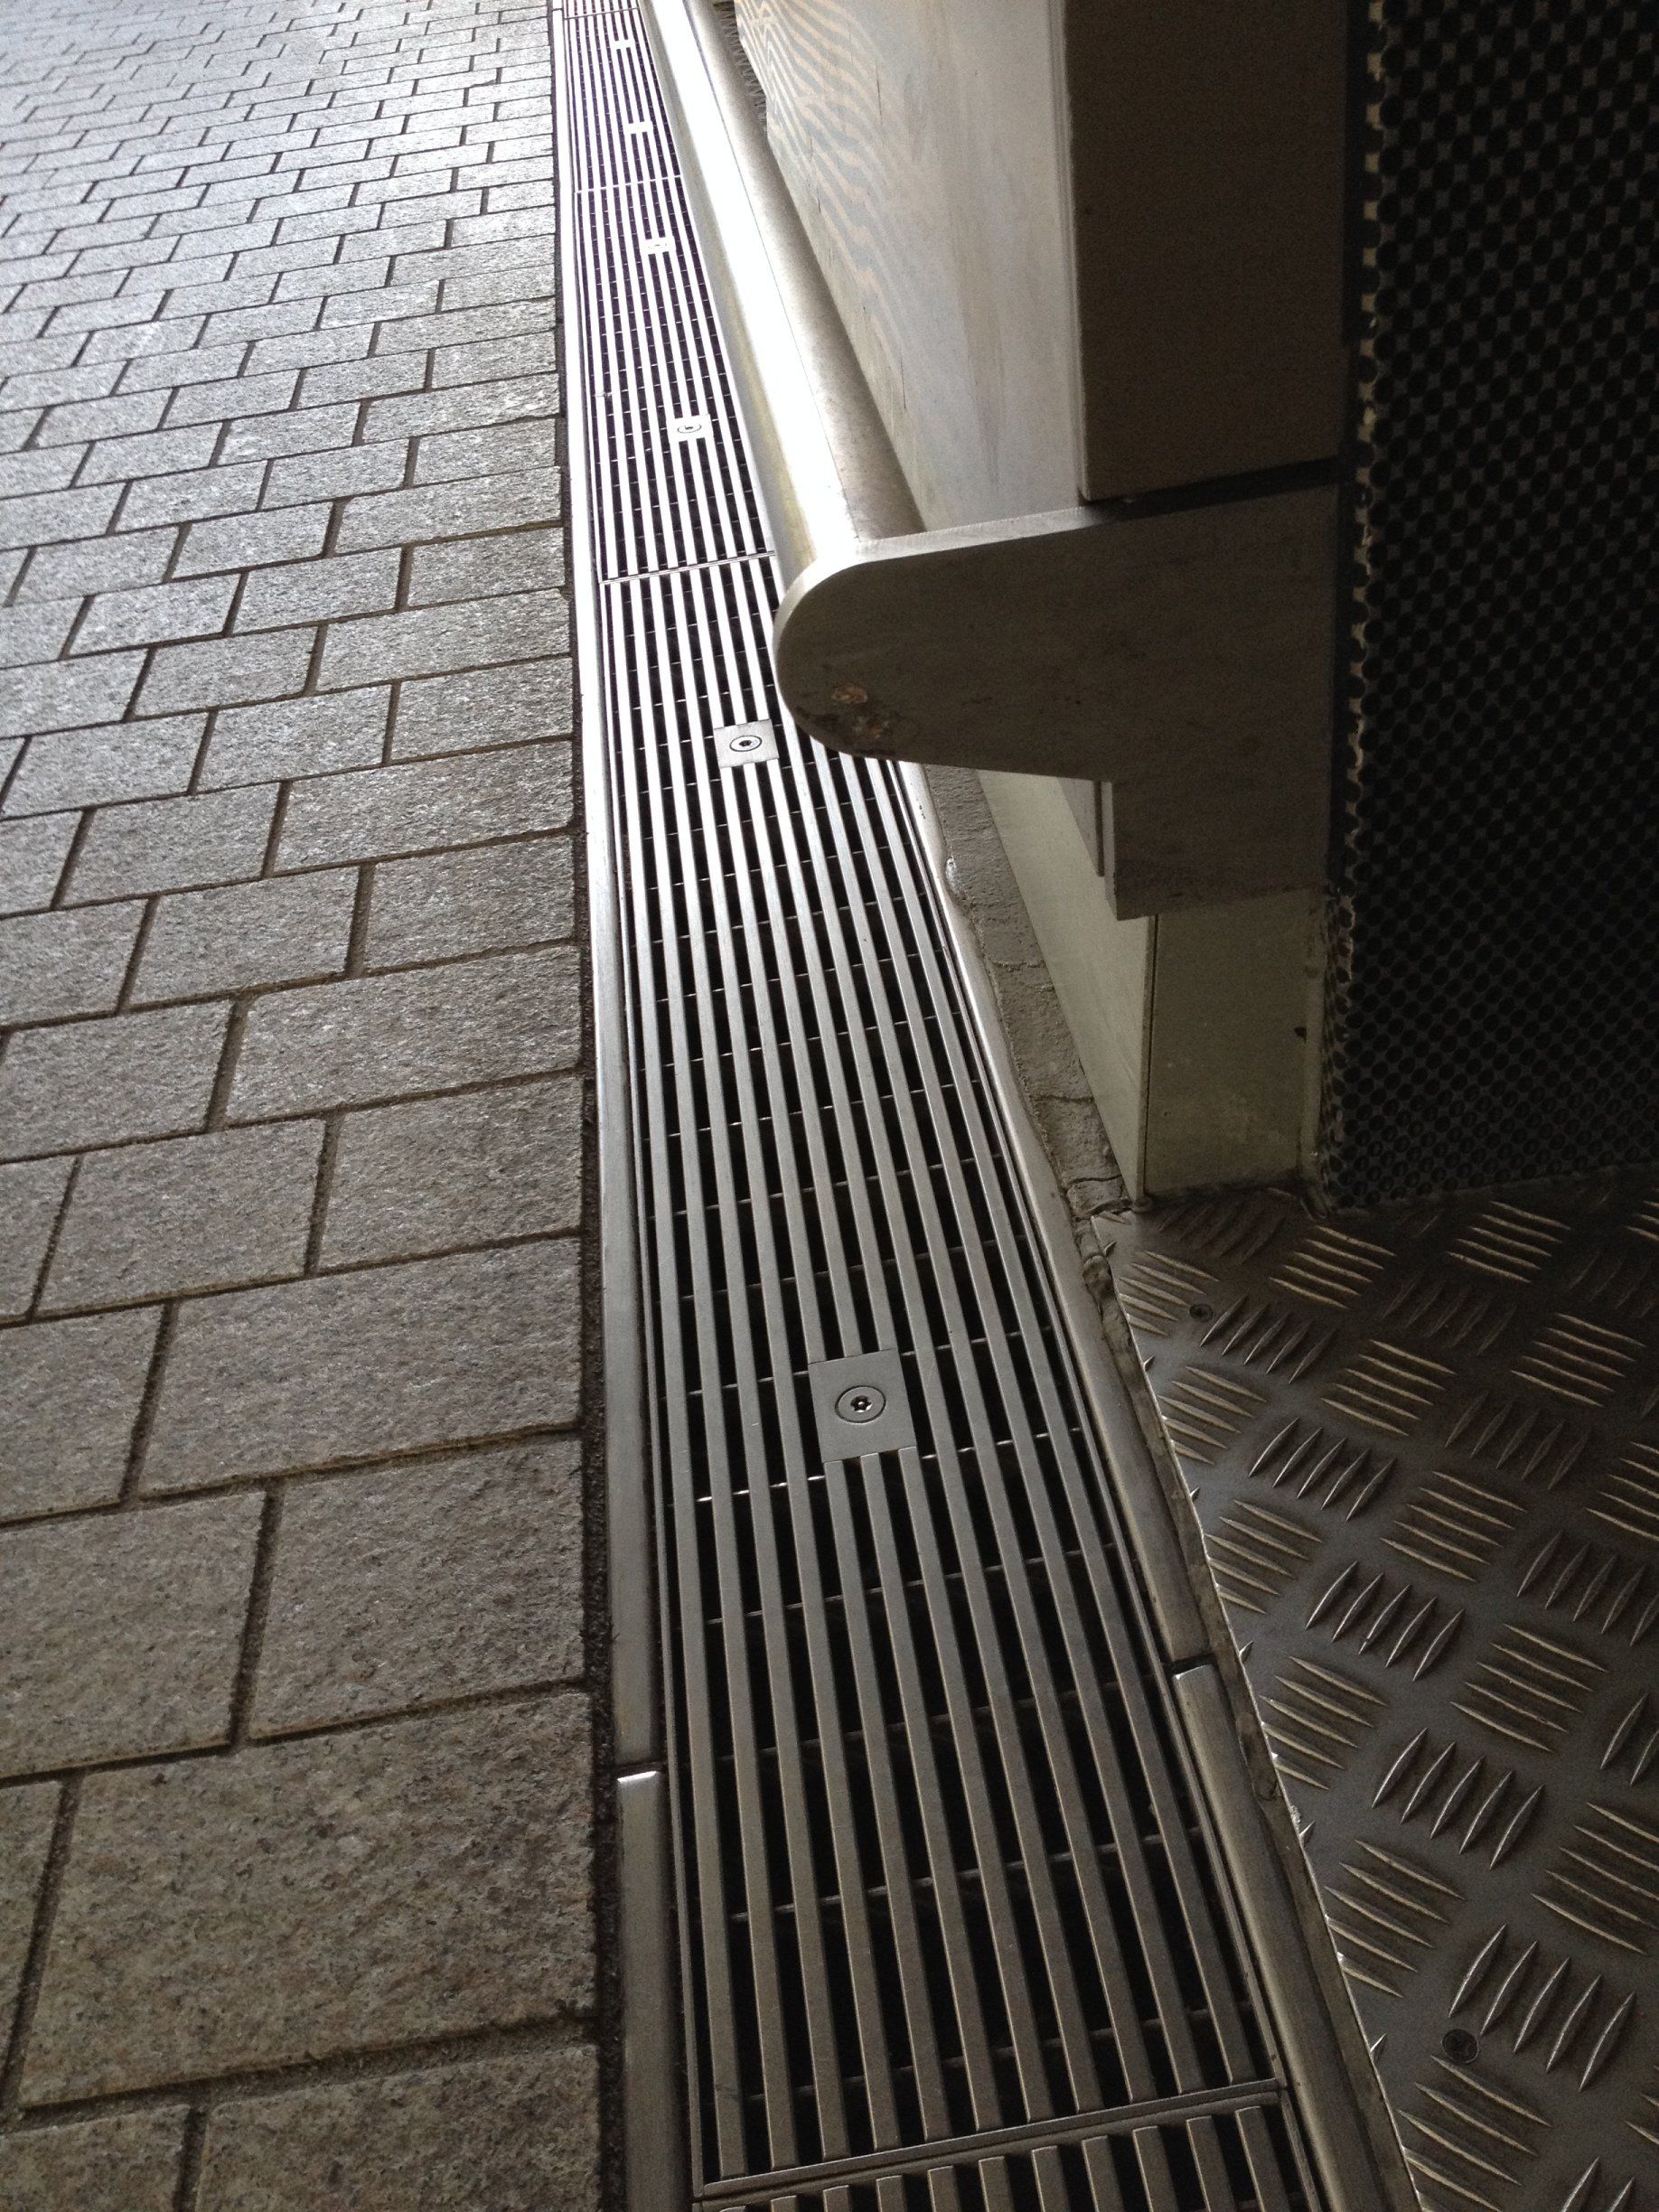 Station floor grilles